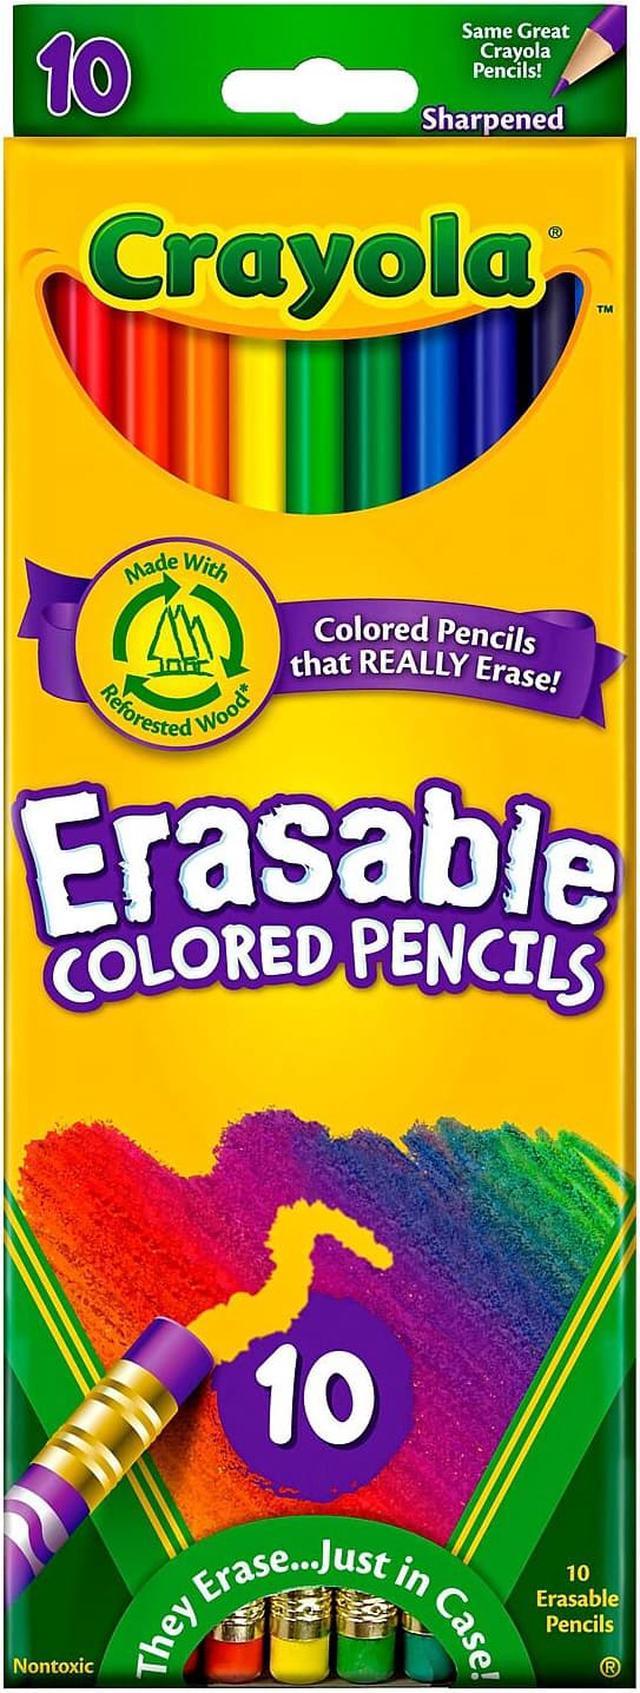 Crayola Erasable Colored Pencils